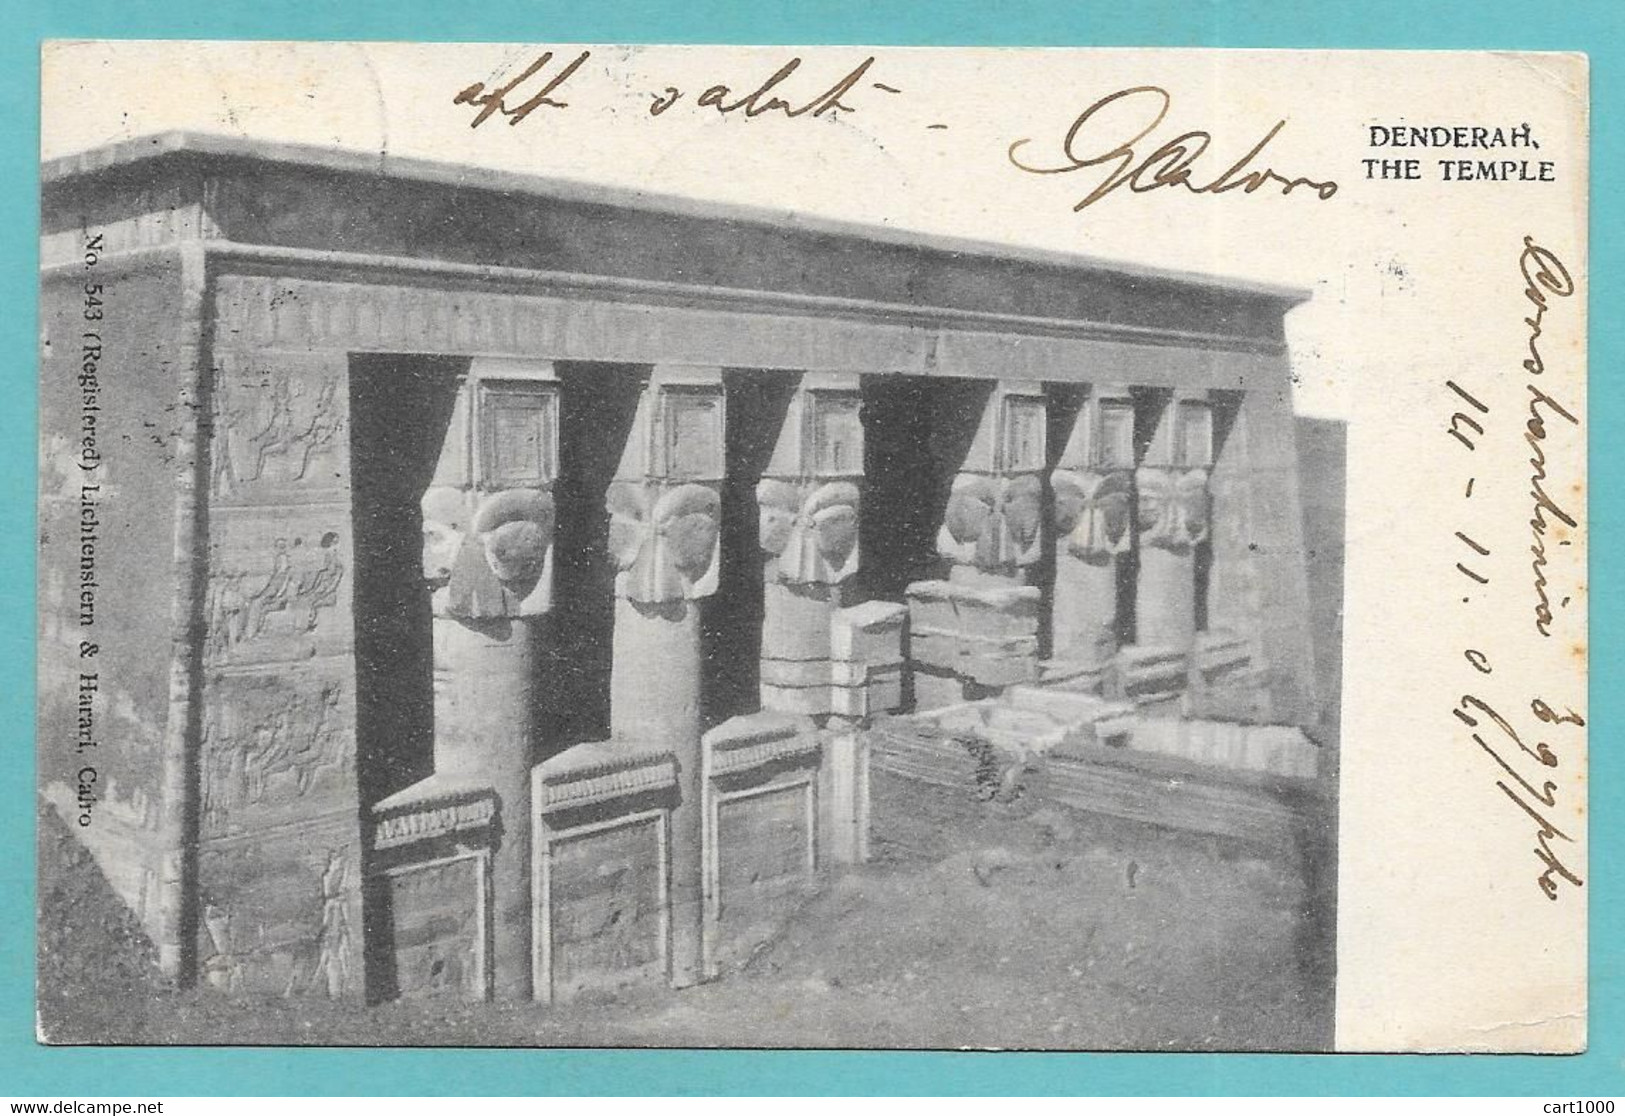 DENDERAH THE TEMPLE CACHET CONSTANTINIE, ADAMIETTE - TANTA 1904 N°C584 EGYPT - Tanta